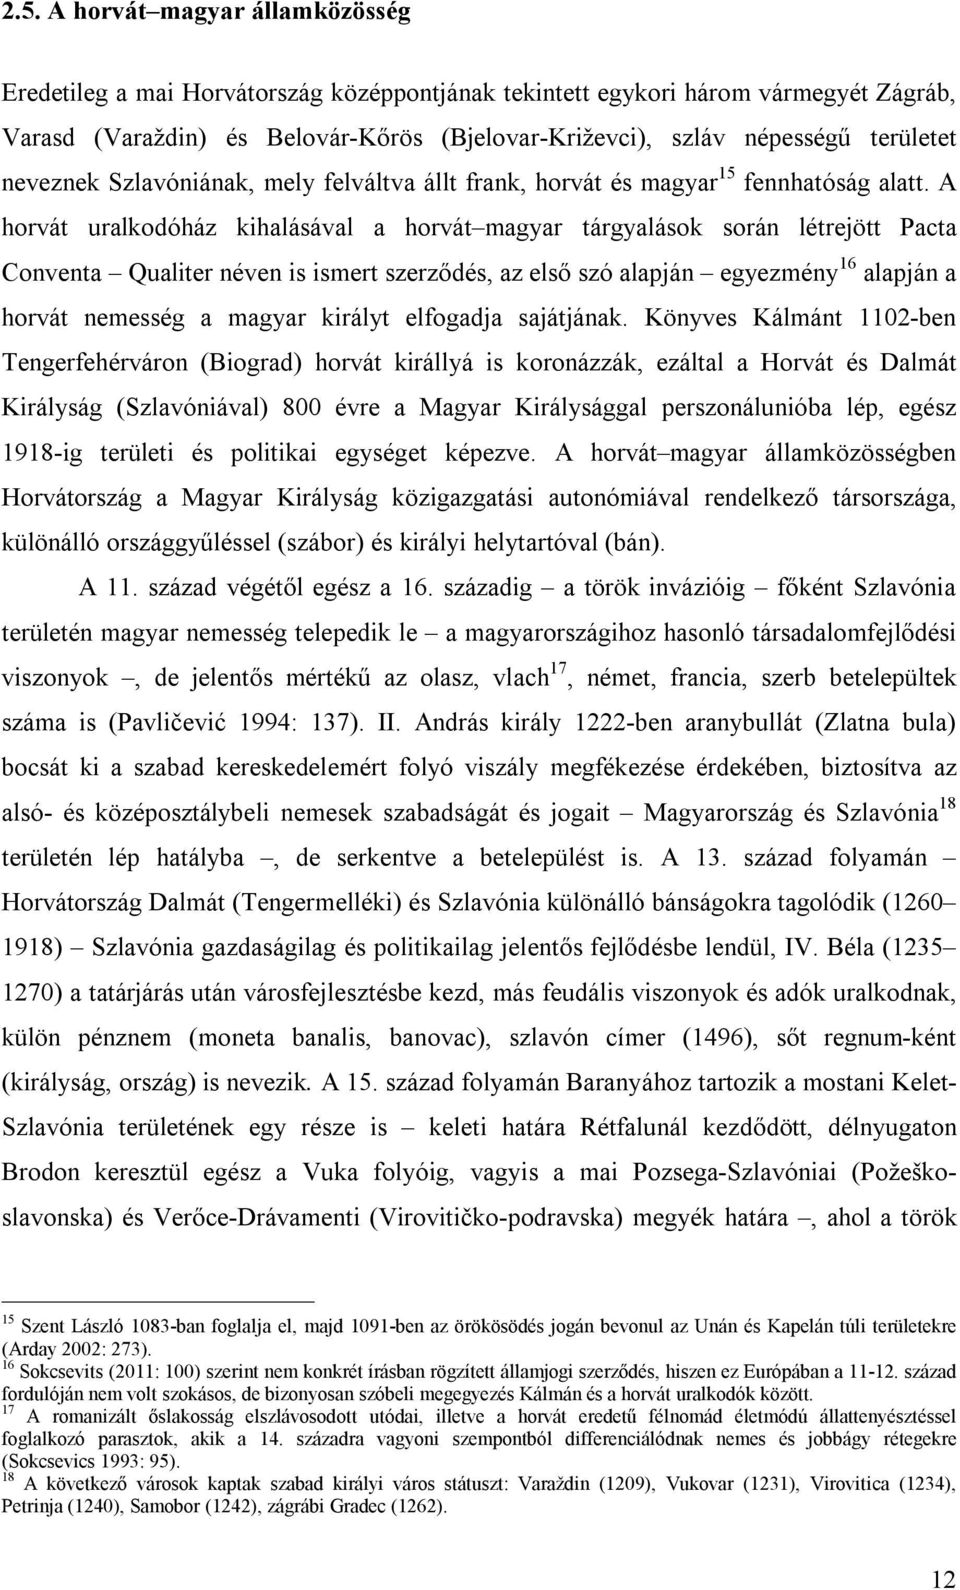 A horvát uralkodóház kihalásával a horvát magyar tárgyalások során létrejött Pacta Conventa Qualiter néven is ismert szerződés, az első szó alapján egyezmény 16 alapján a horvát nemesség a magyar